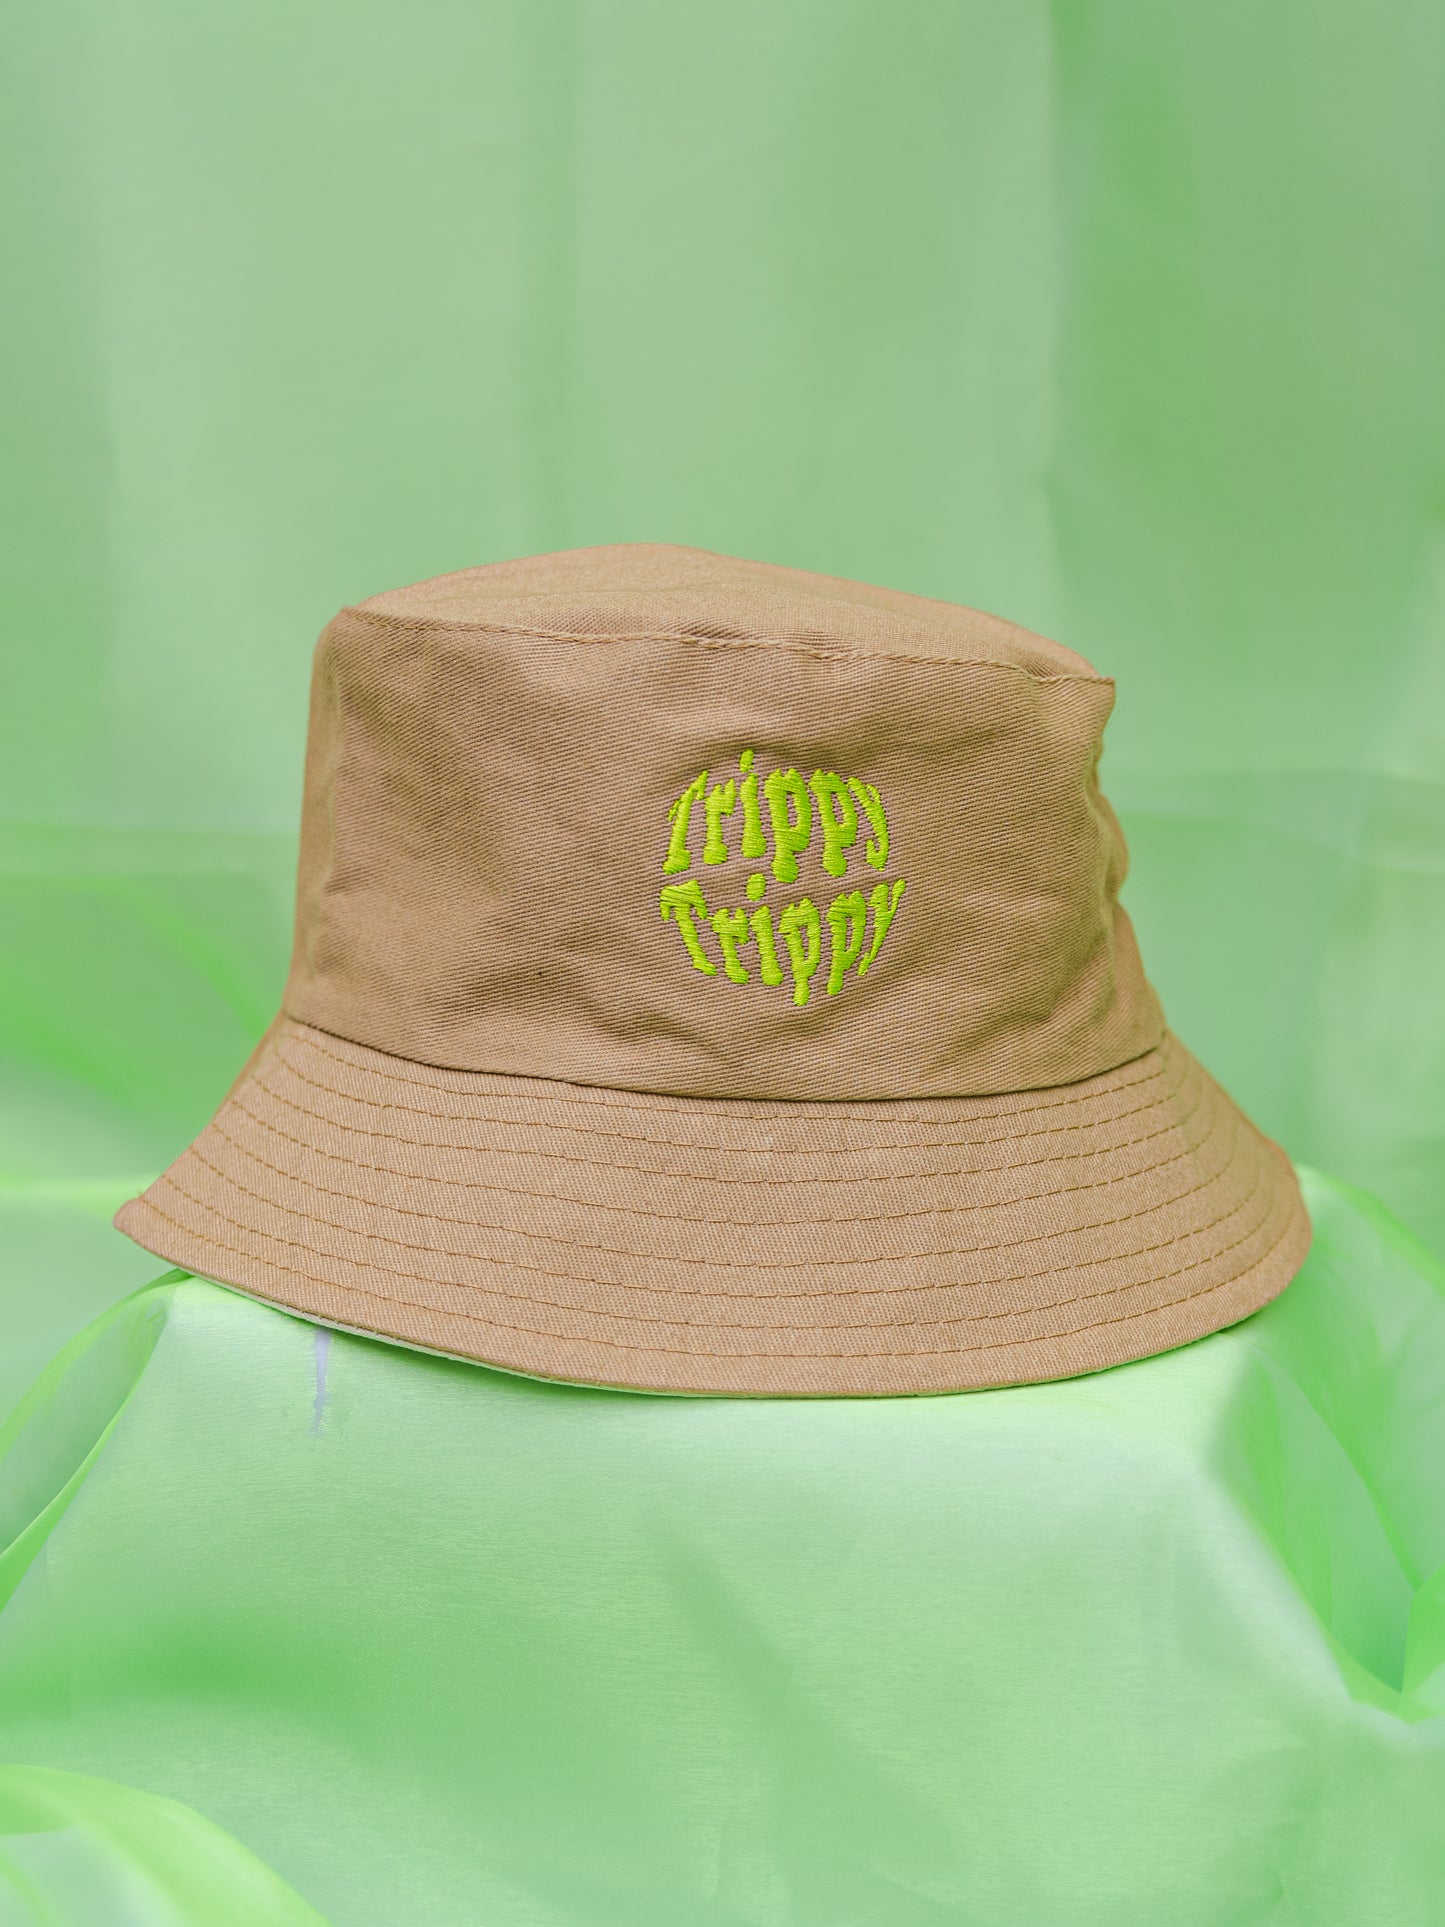 Bucket Hat "Trippy" color arena